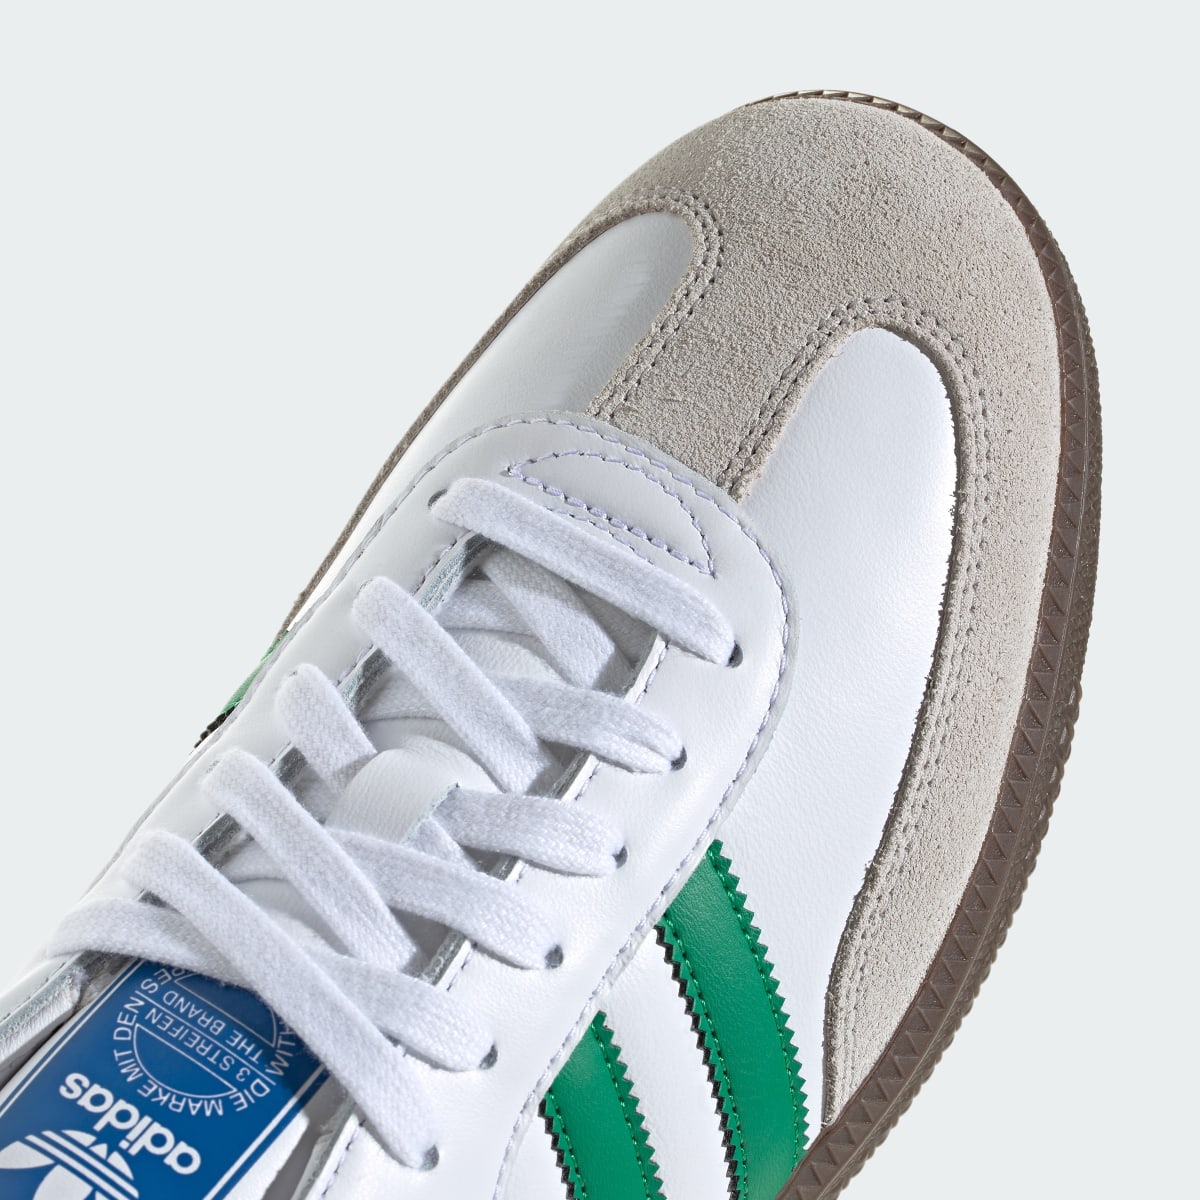 Adidas Samba OG Ayakkabı. 10